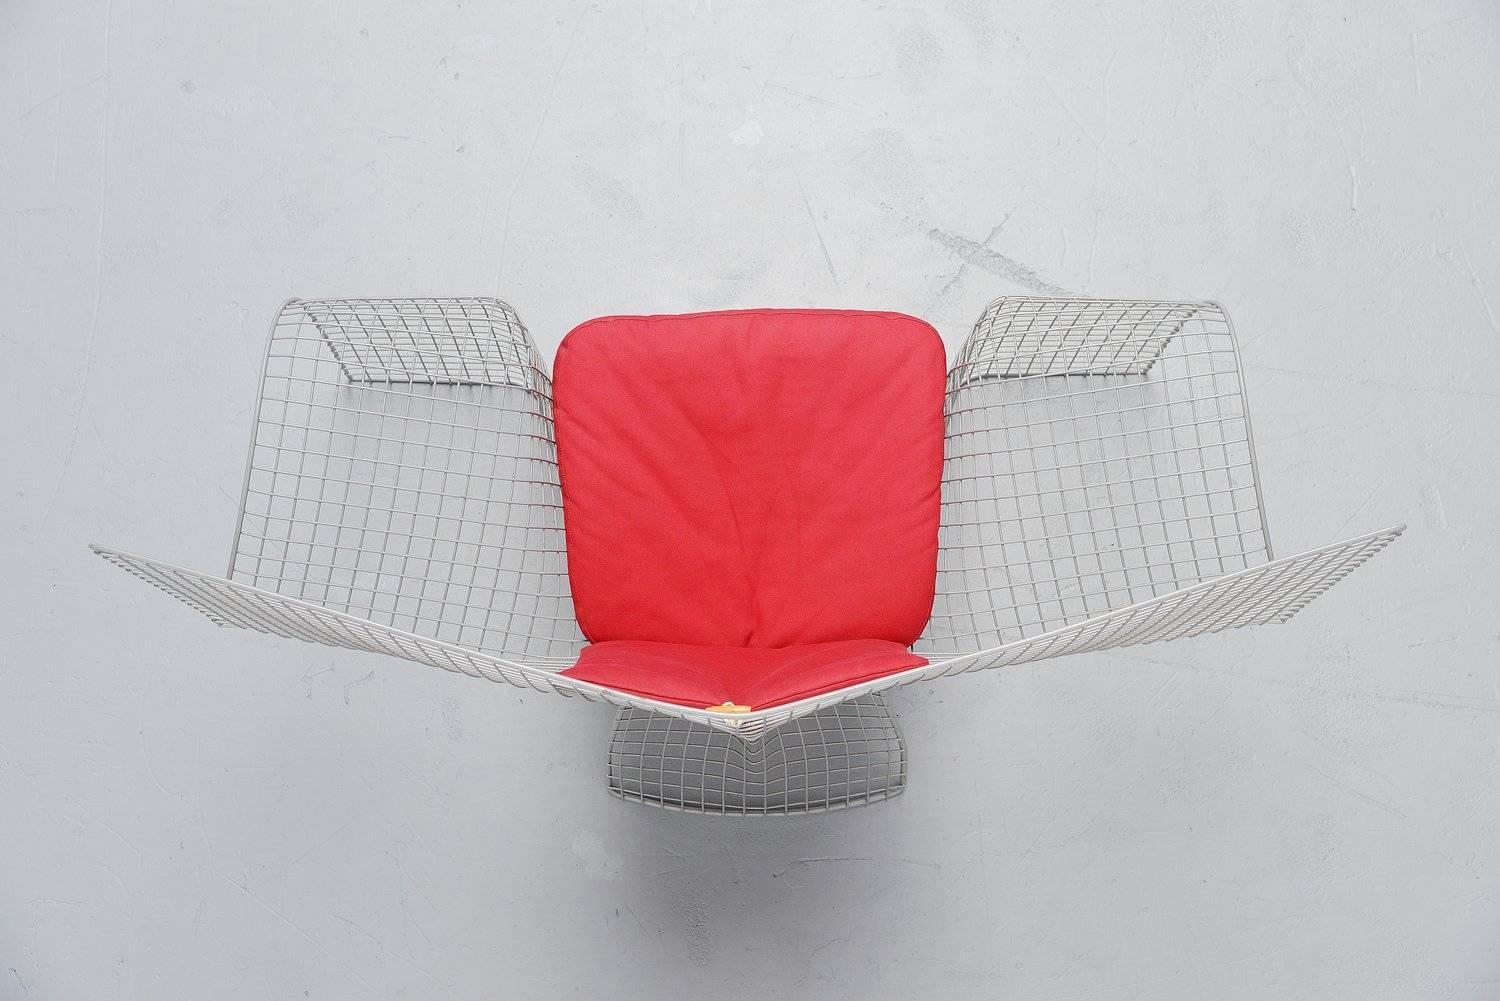 Late 20th Century Volare Chair by D'Urbino, Lomazzi e Mittermair for Zerodesigno, 1992